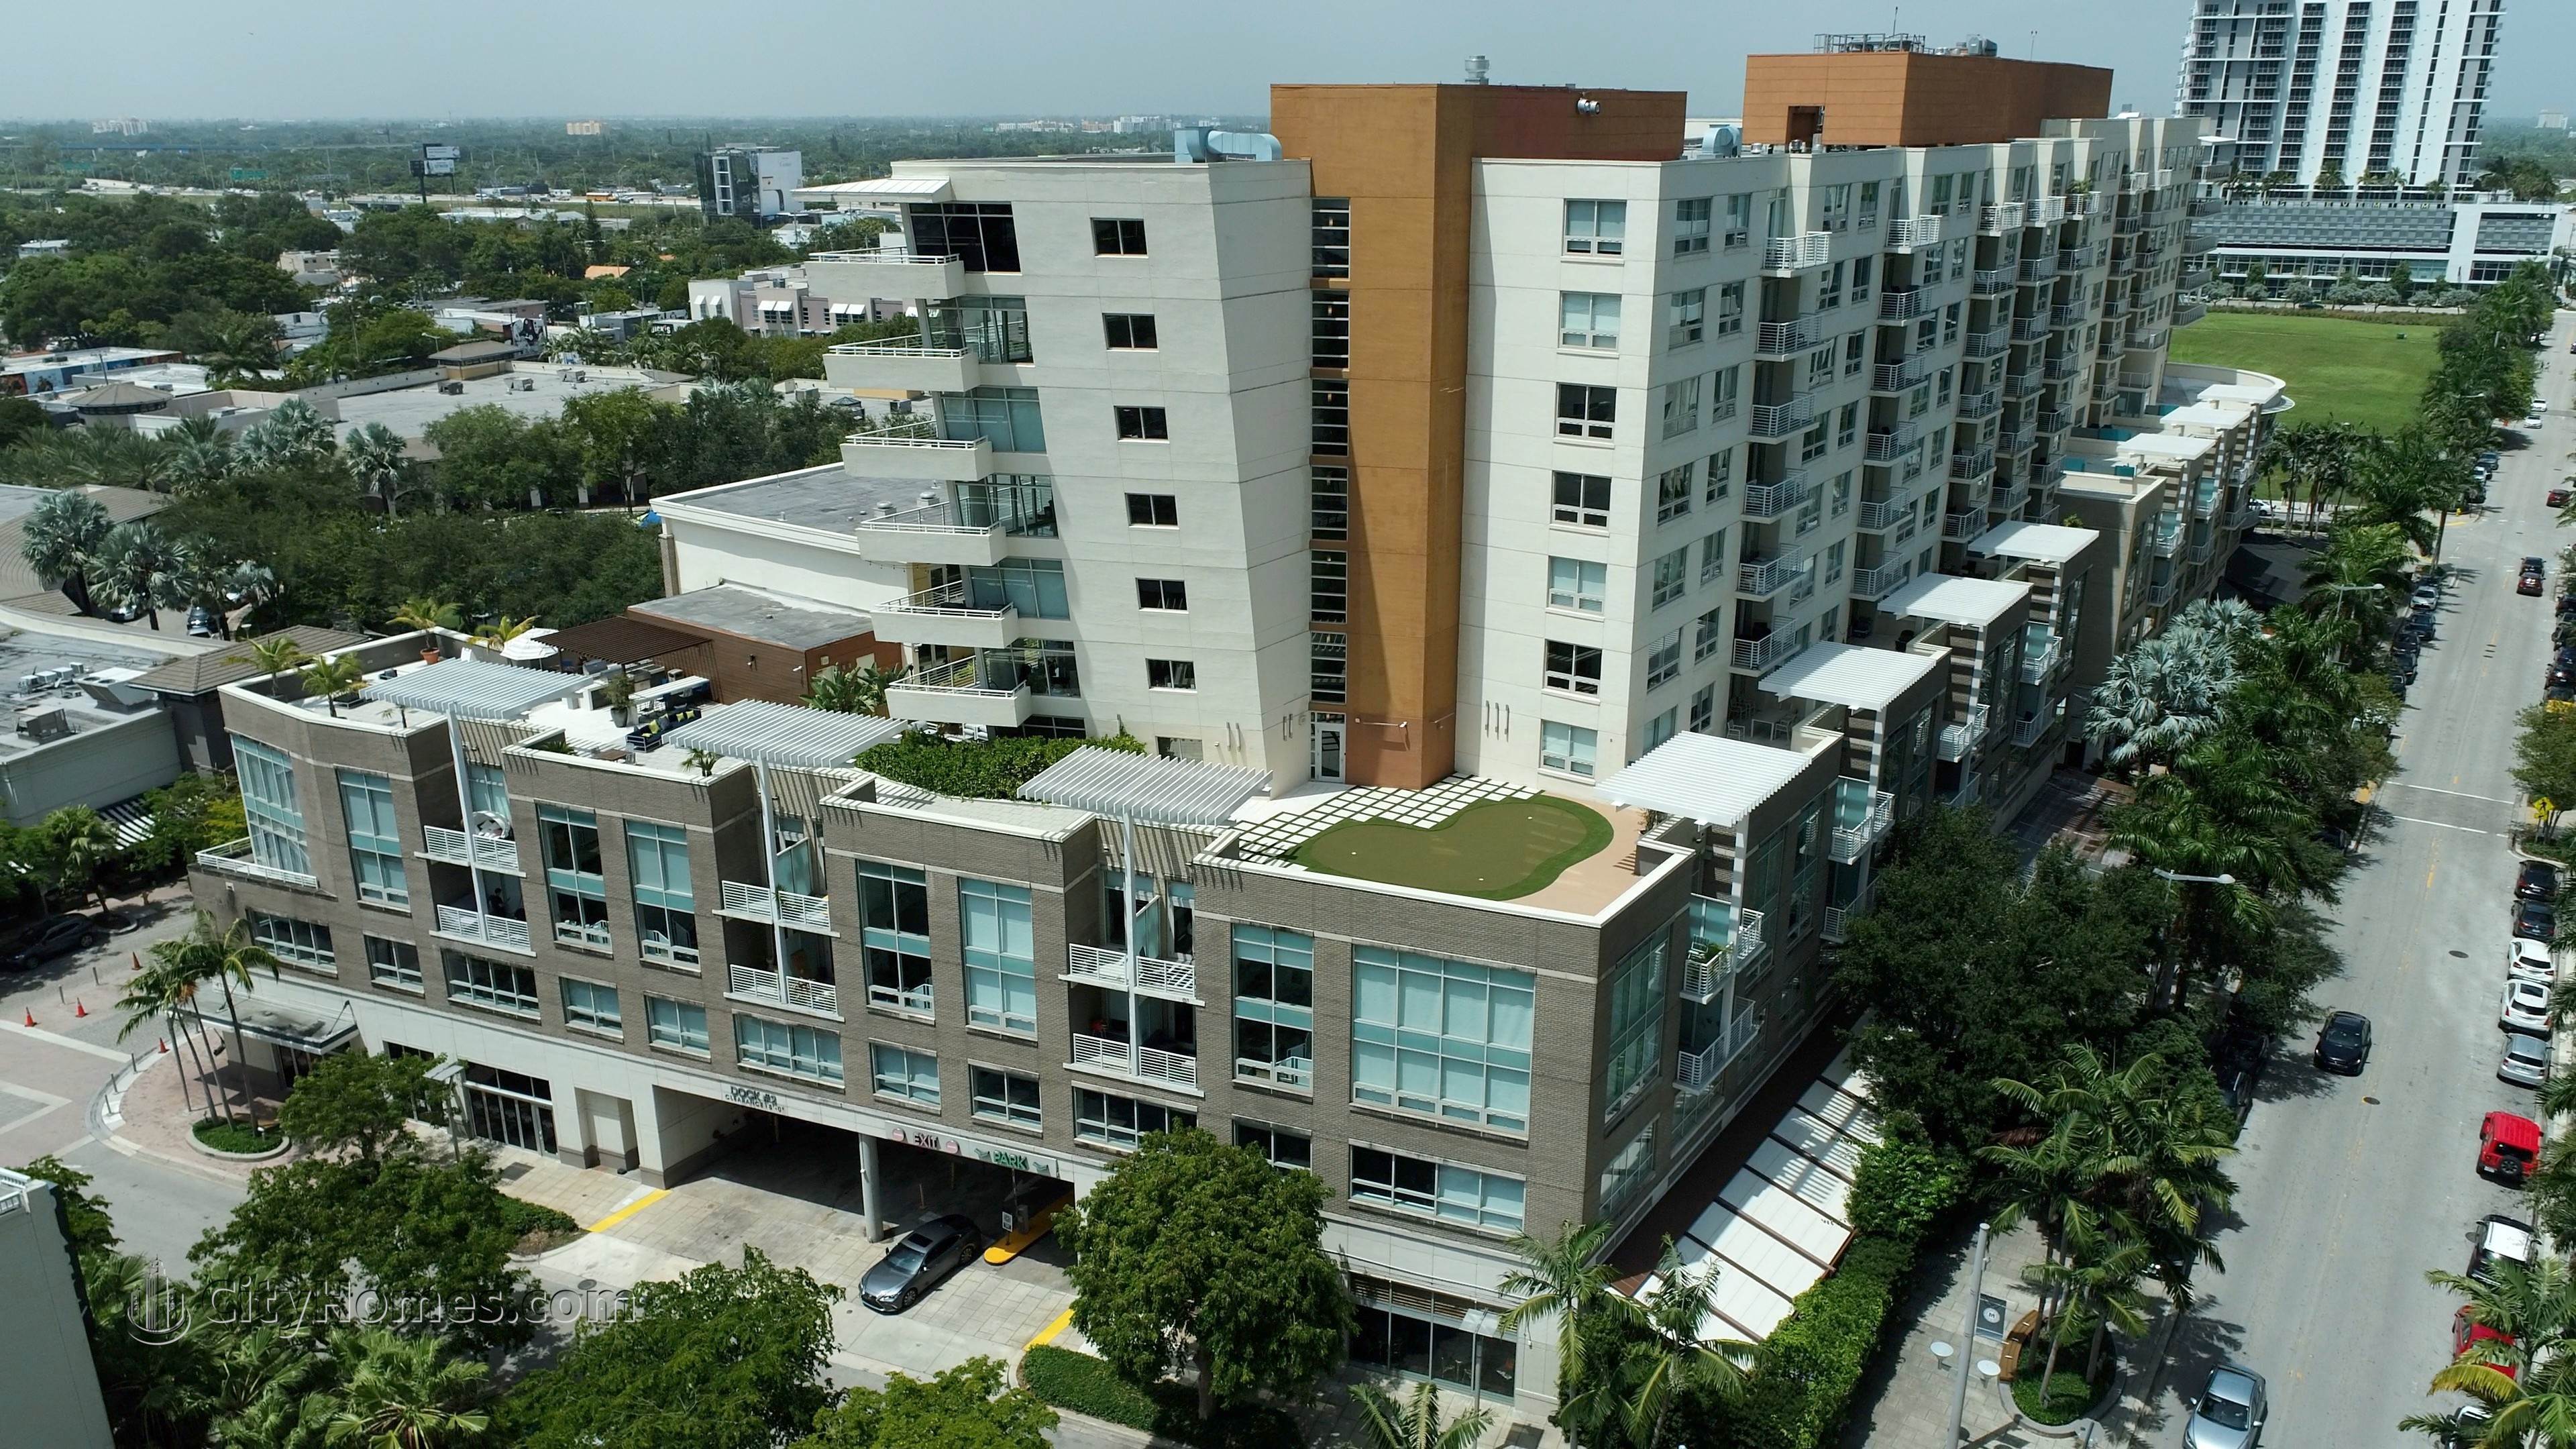 Midtown Midblock Gebäude bei 3250 NE 1st Avenue, Midtown Miami, Miami, FL 33137